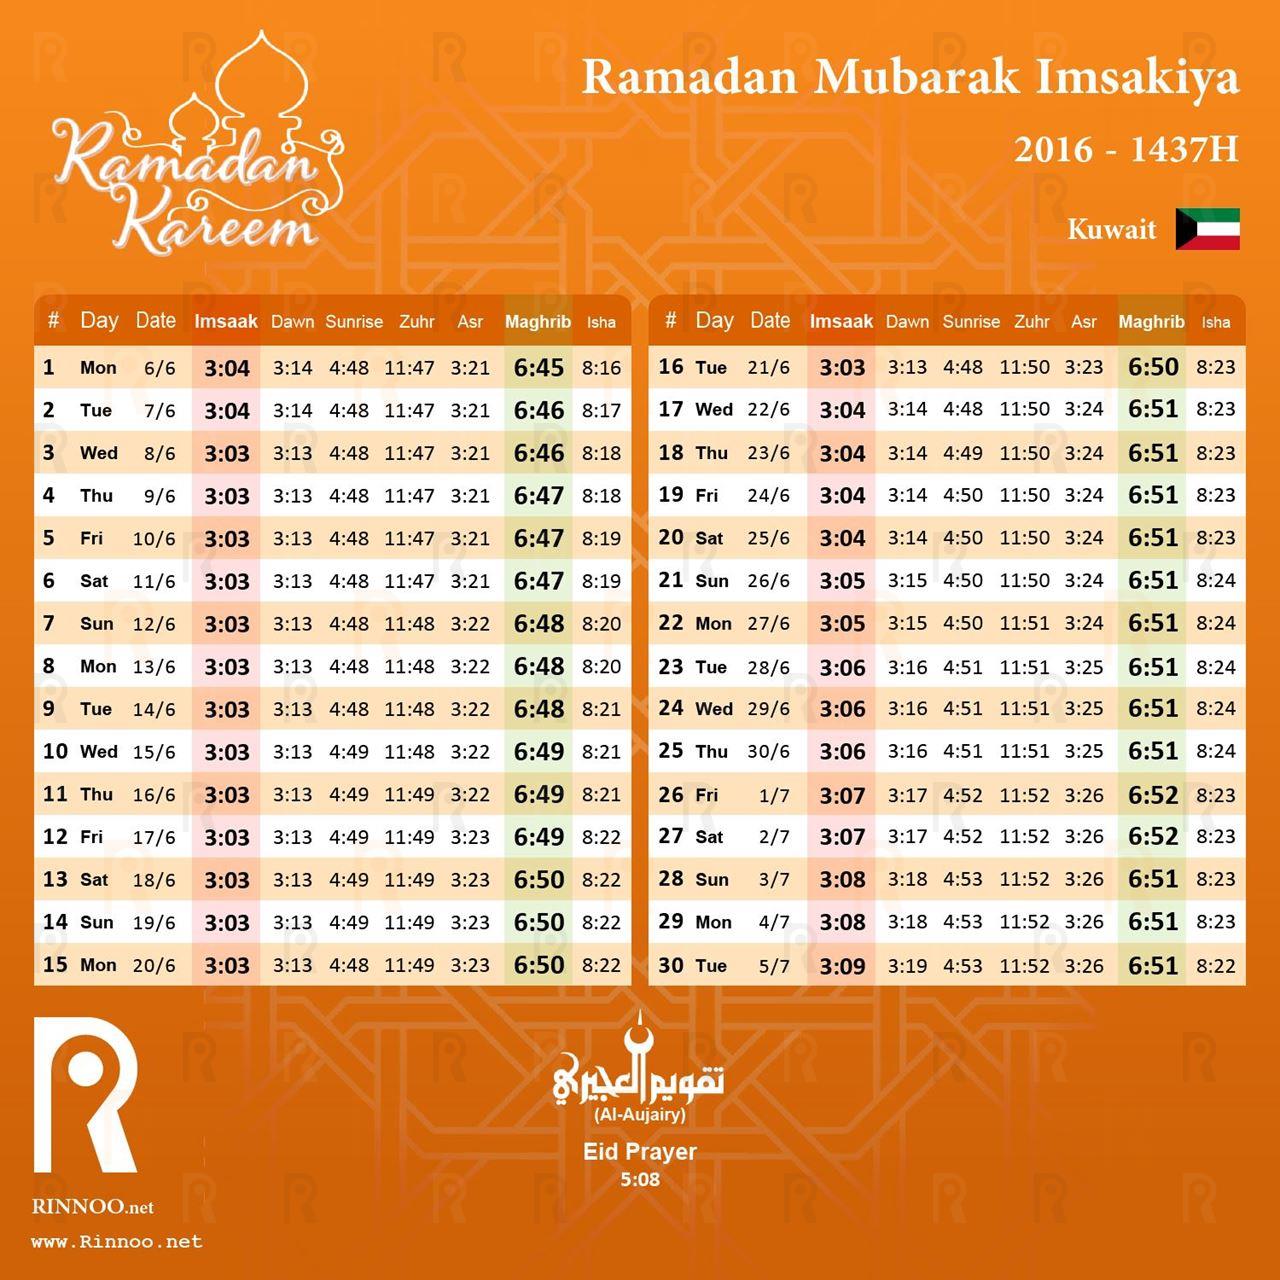 Kuwait Ramadan 2016 Imsakiya